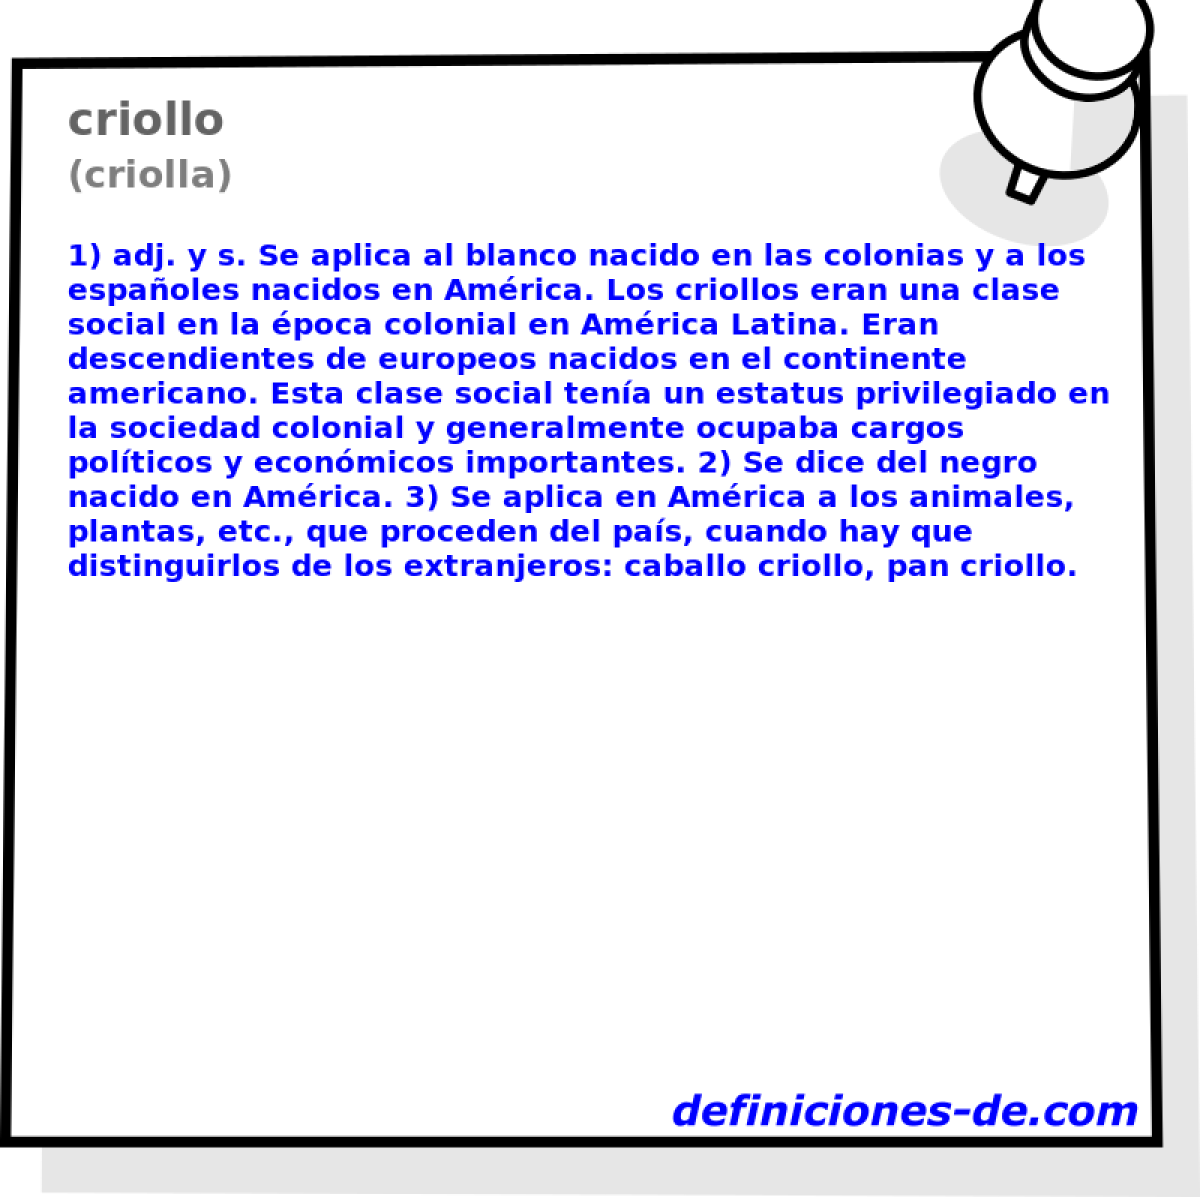 criollo (criolla)